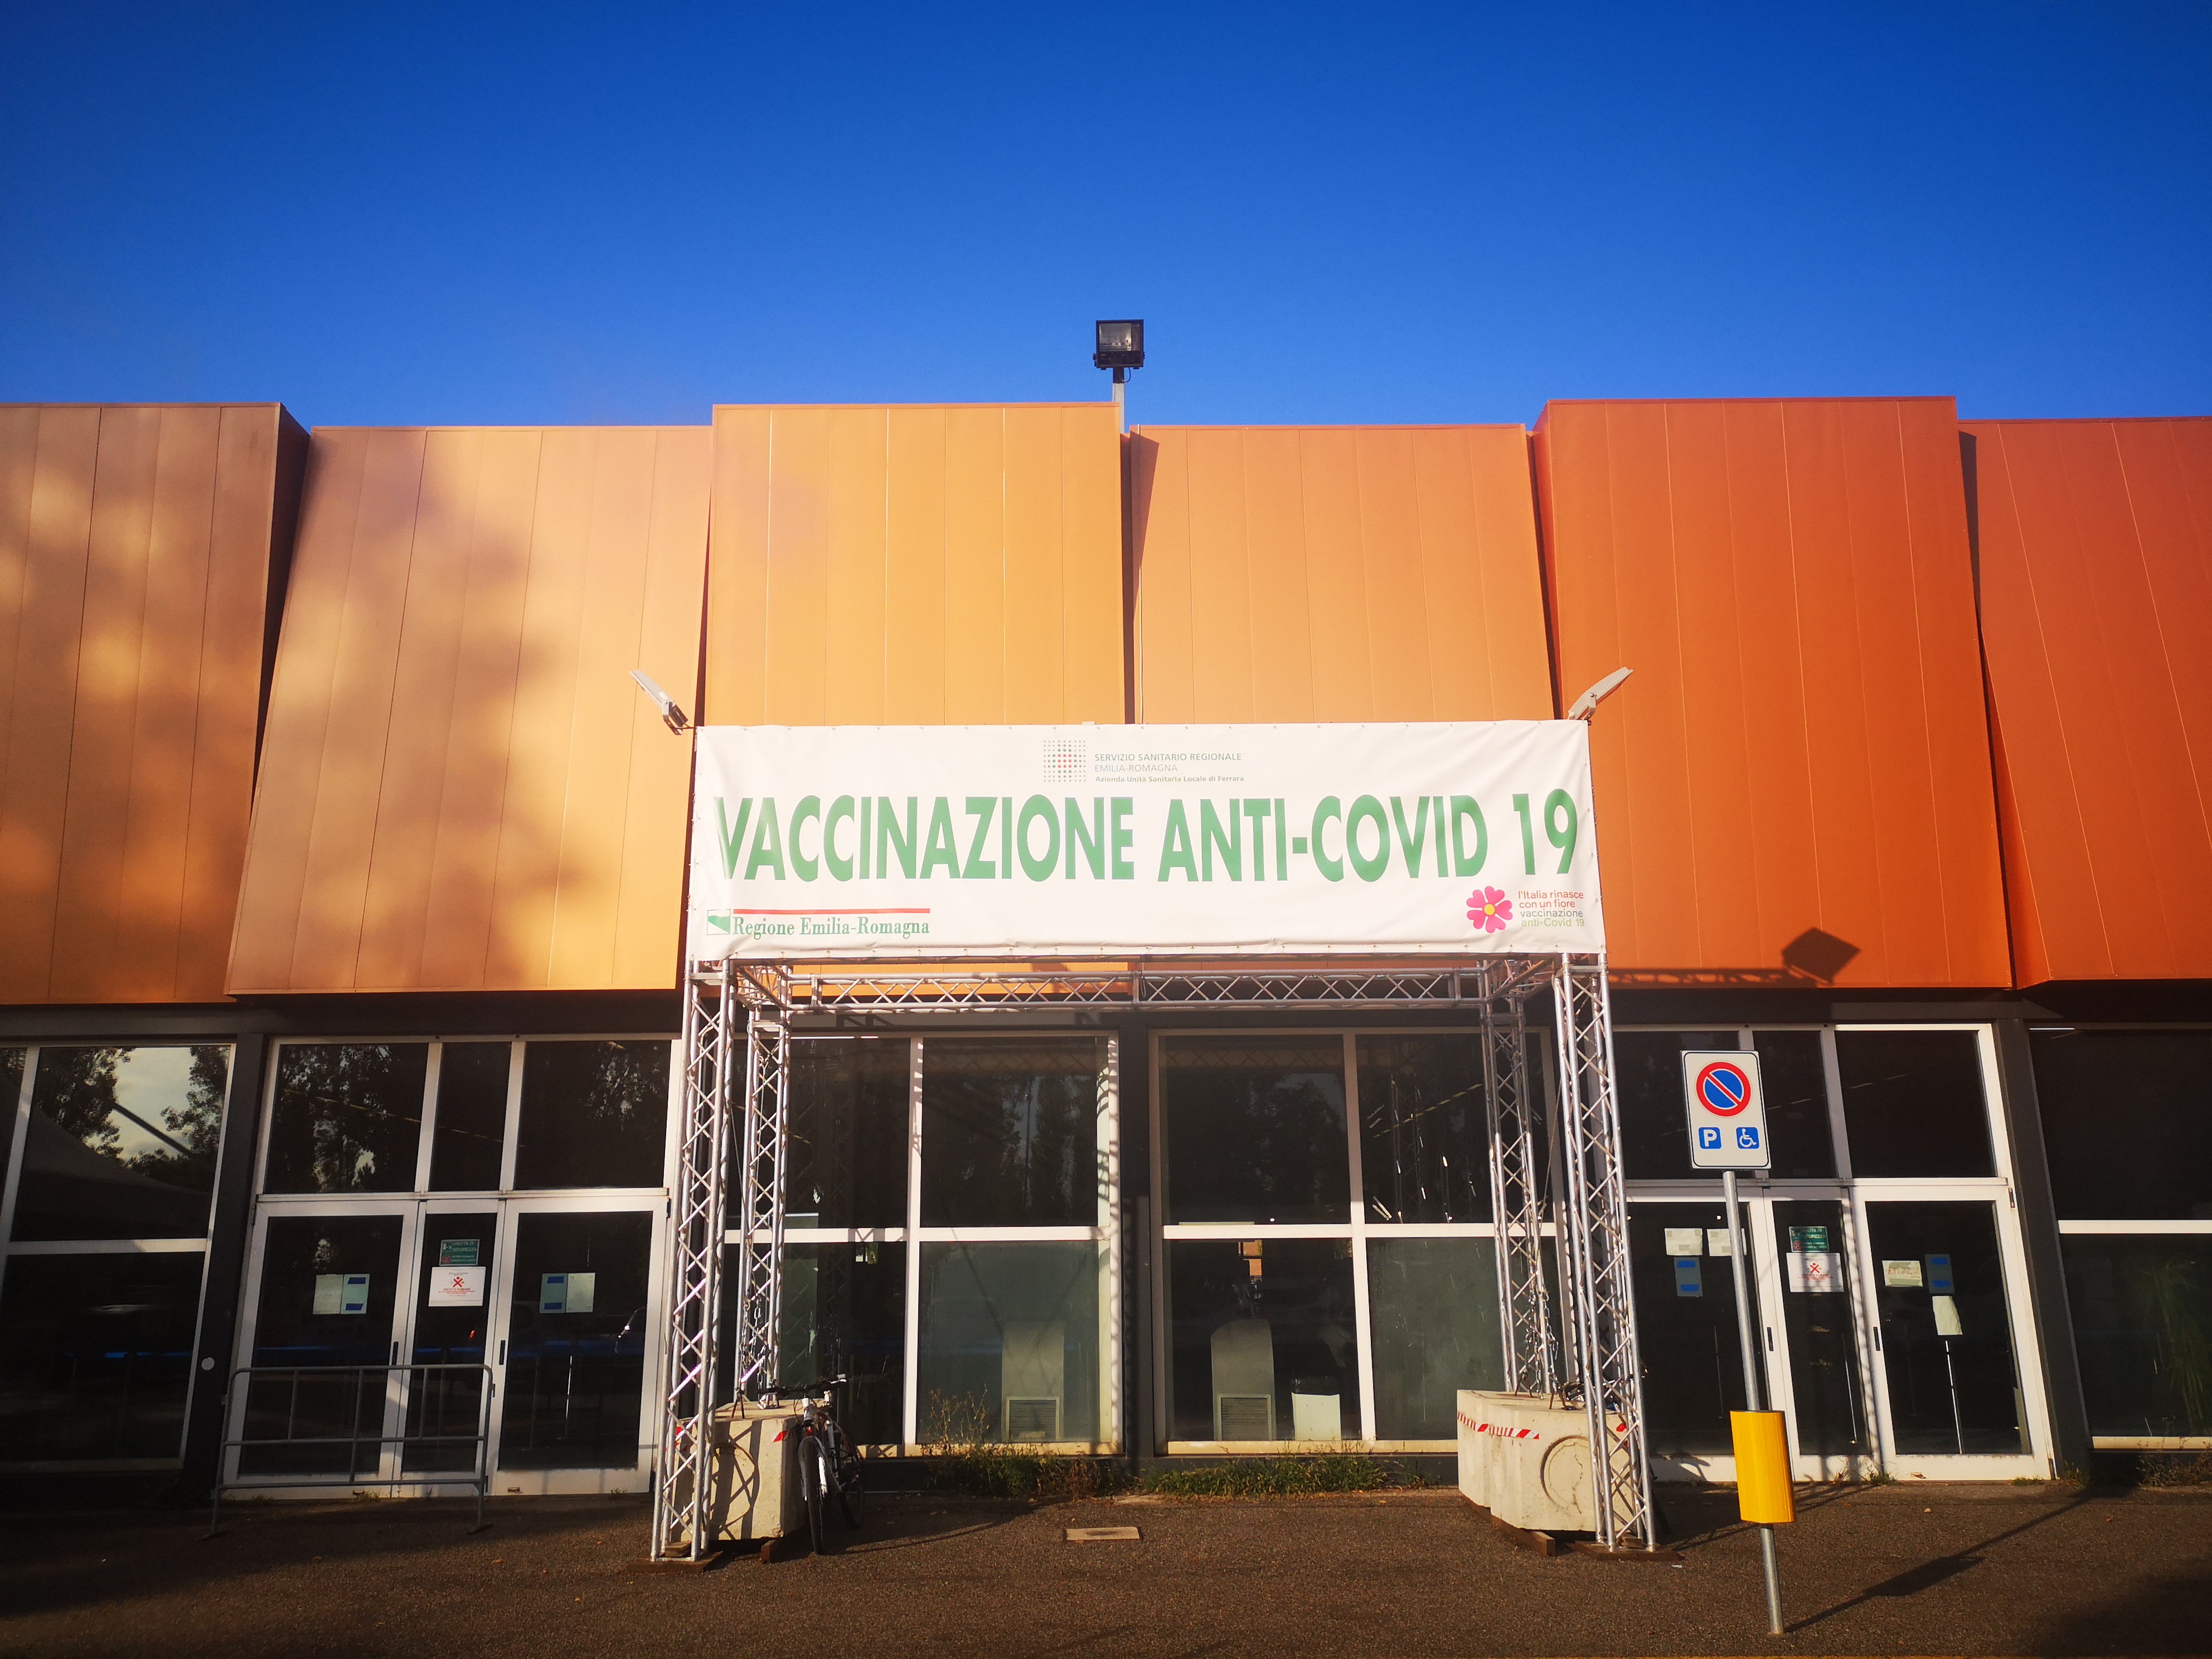 Vaccinazione libera dal 30 agosto al 5 settembre per tutte le fasce d'età a Ferrara Fiere, Codigoro, Comacchio, Cento e Argenta